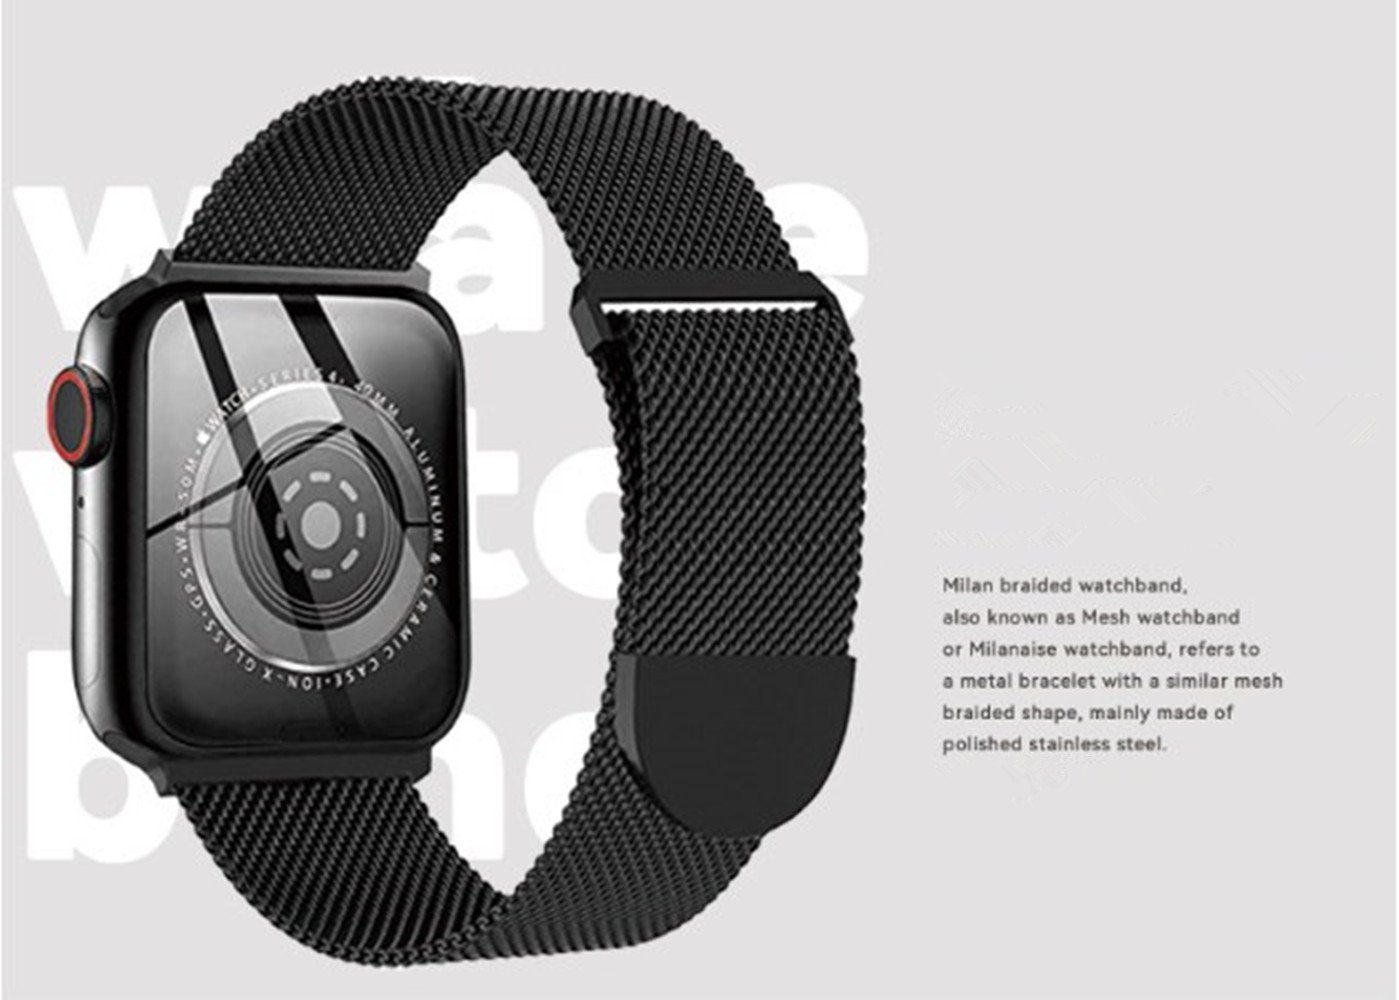 XDeer 8/7 Series Magnet Ersatzarmband Apple Verbesserter Armband 38/40/41mm mit 42/44/45mm, für Armband Watch und Metall Uhrenarmband für iWatch